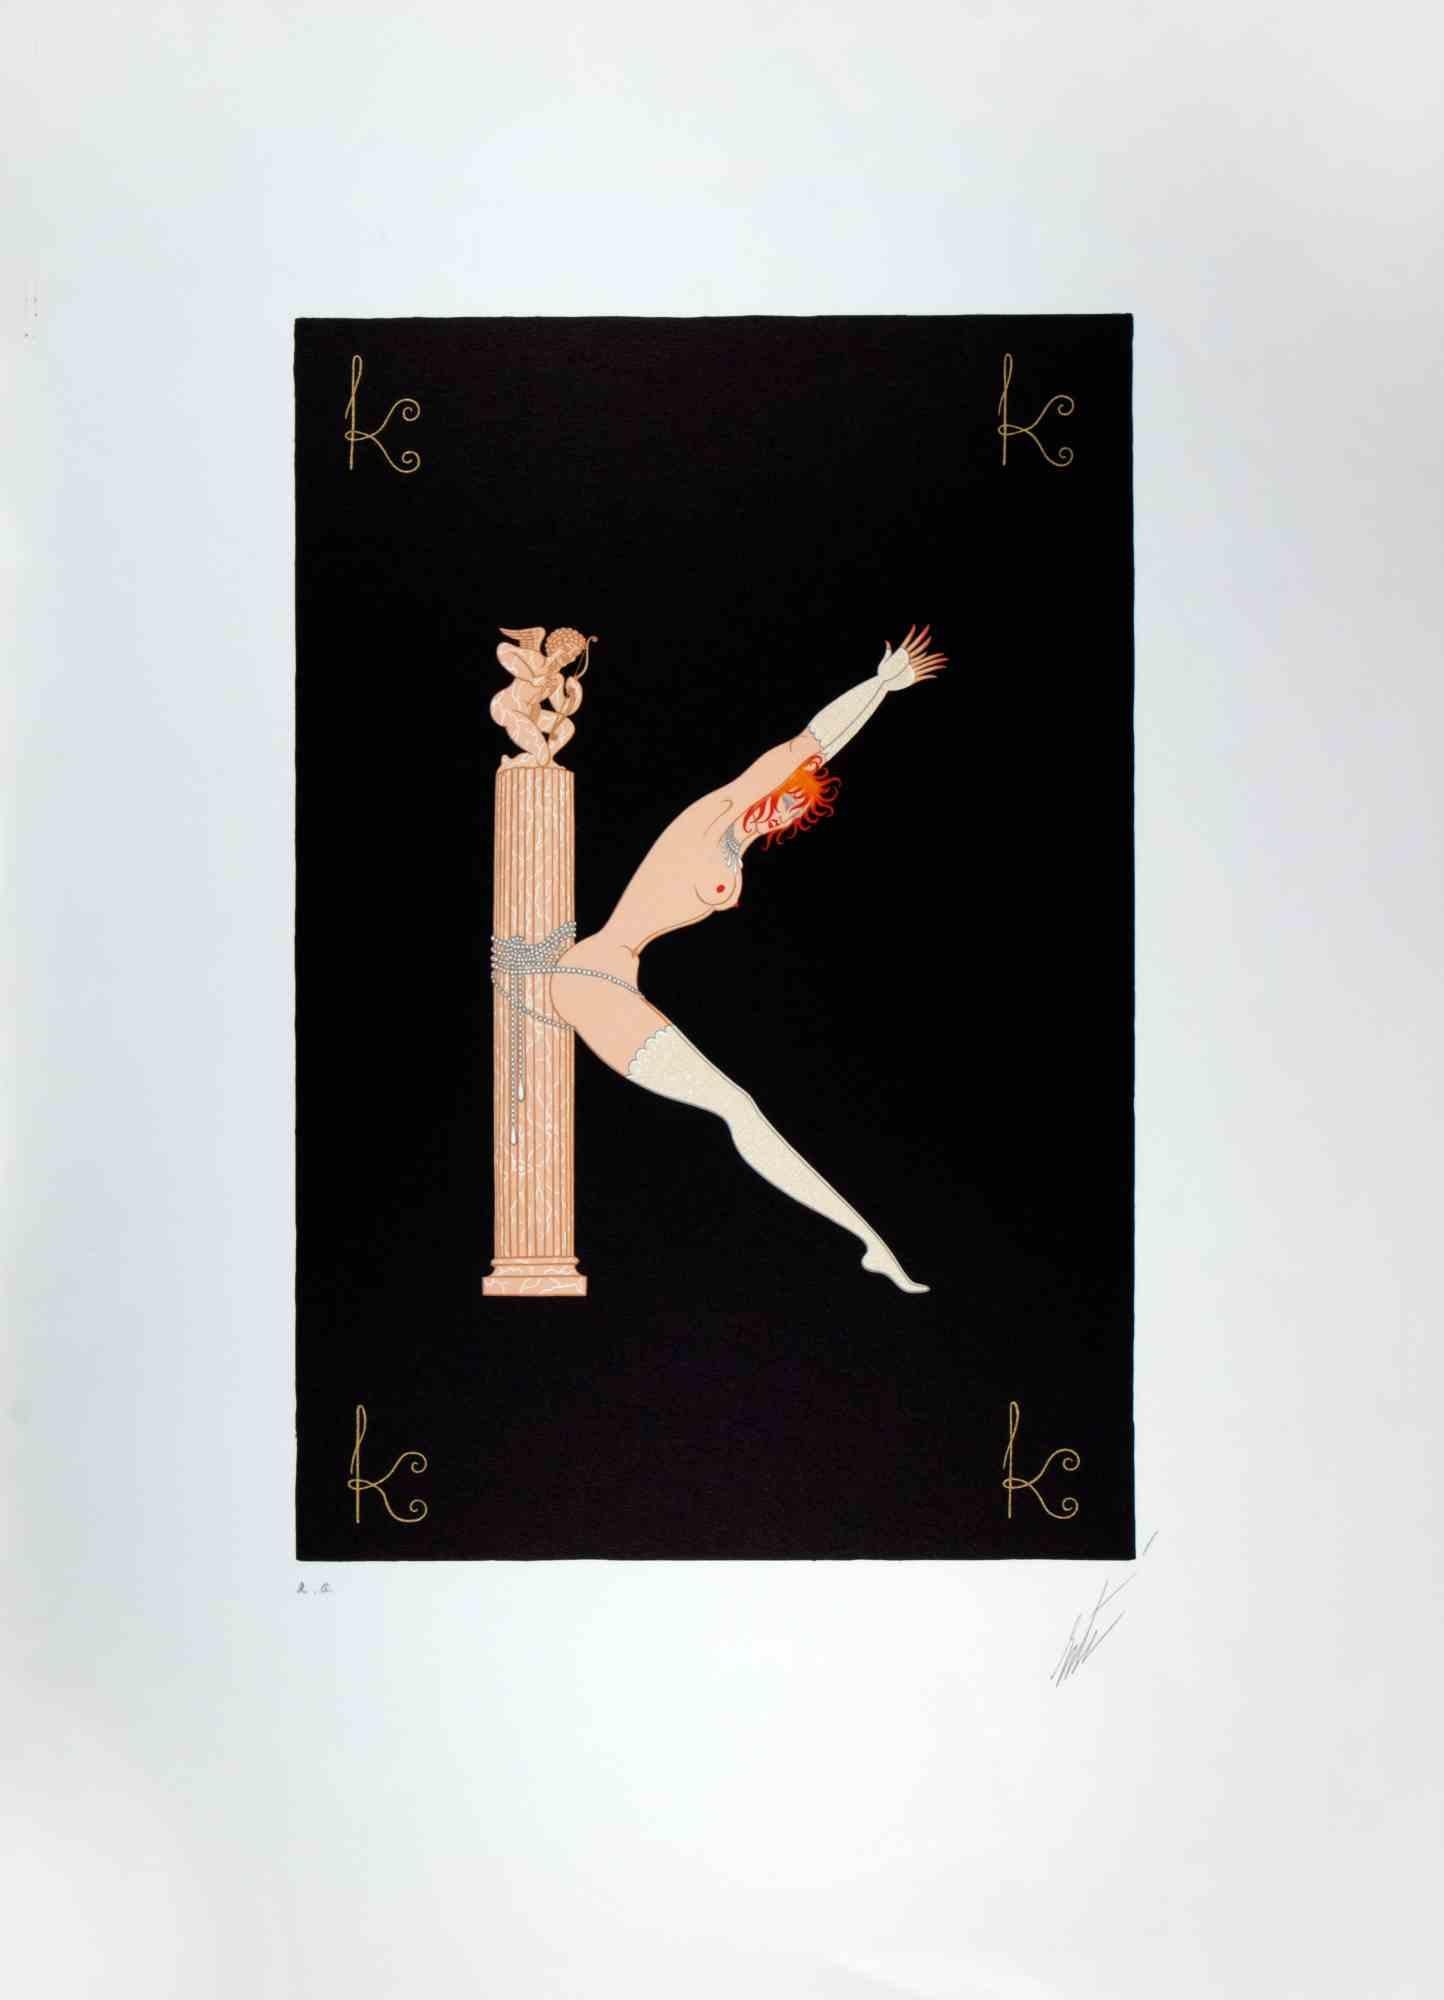 La lettre K - de la suite Lettres de l'alphabet est une œuvre d'art contemporain réalisée par Erté (Romain de Tirtoff).

Lithographie et sérigraphie.

L'œuvre est tirée de la suite "Lettres de l'alphabet", 1976.

Signé à la main dans la marge